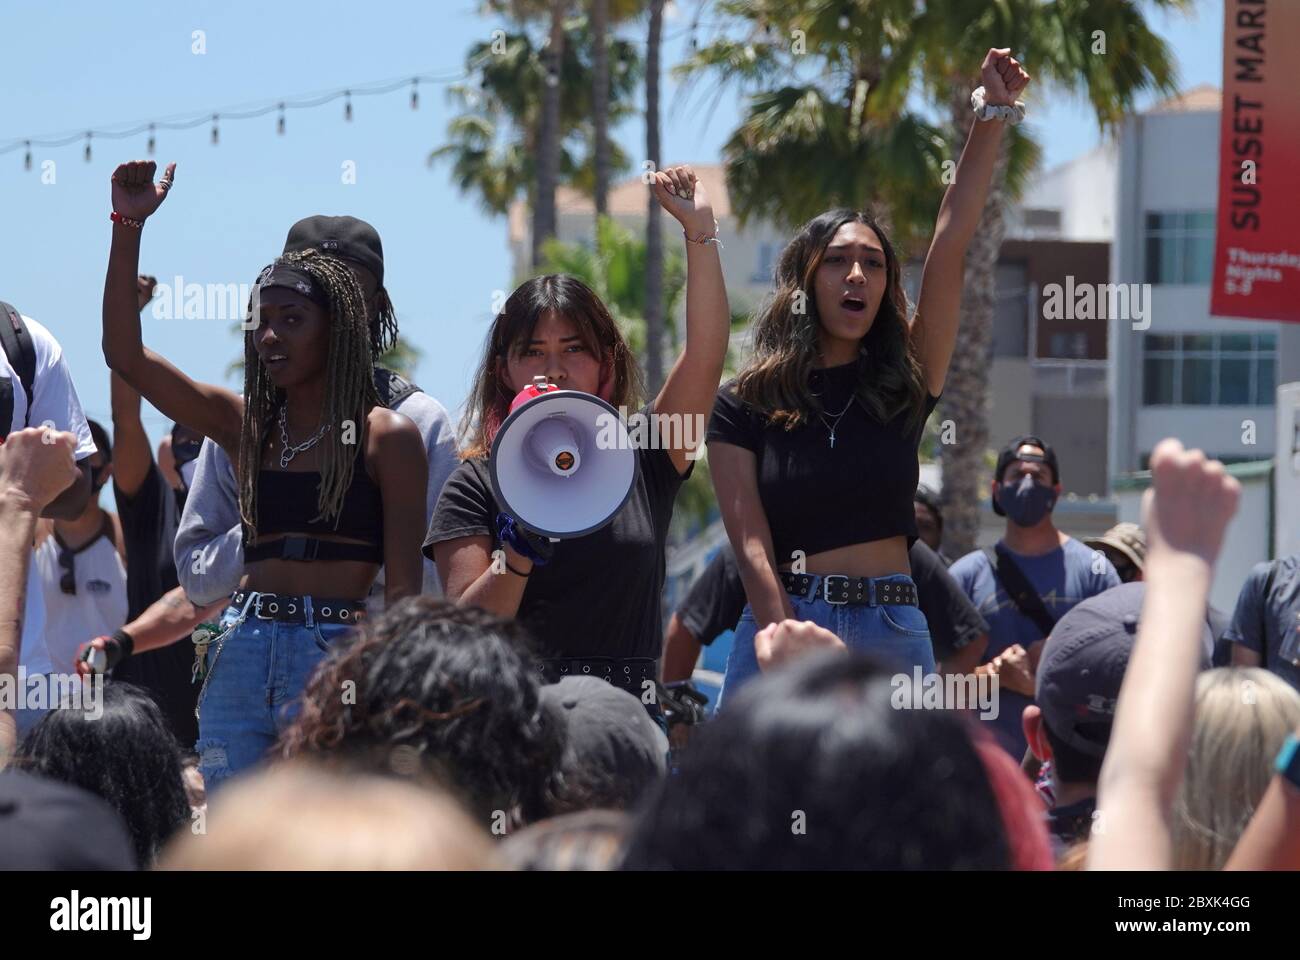 Oceanside, CA / USA - 7 giugno 2020: Gli organizzatori di una marcia pacifica di protesta 'Black Lives Matter' parlano alla folla con il corno. Foto Stock